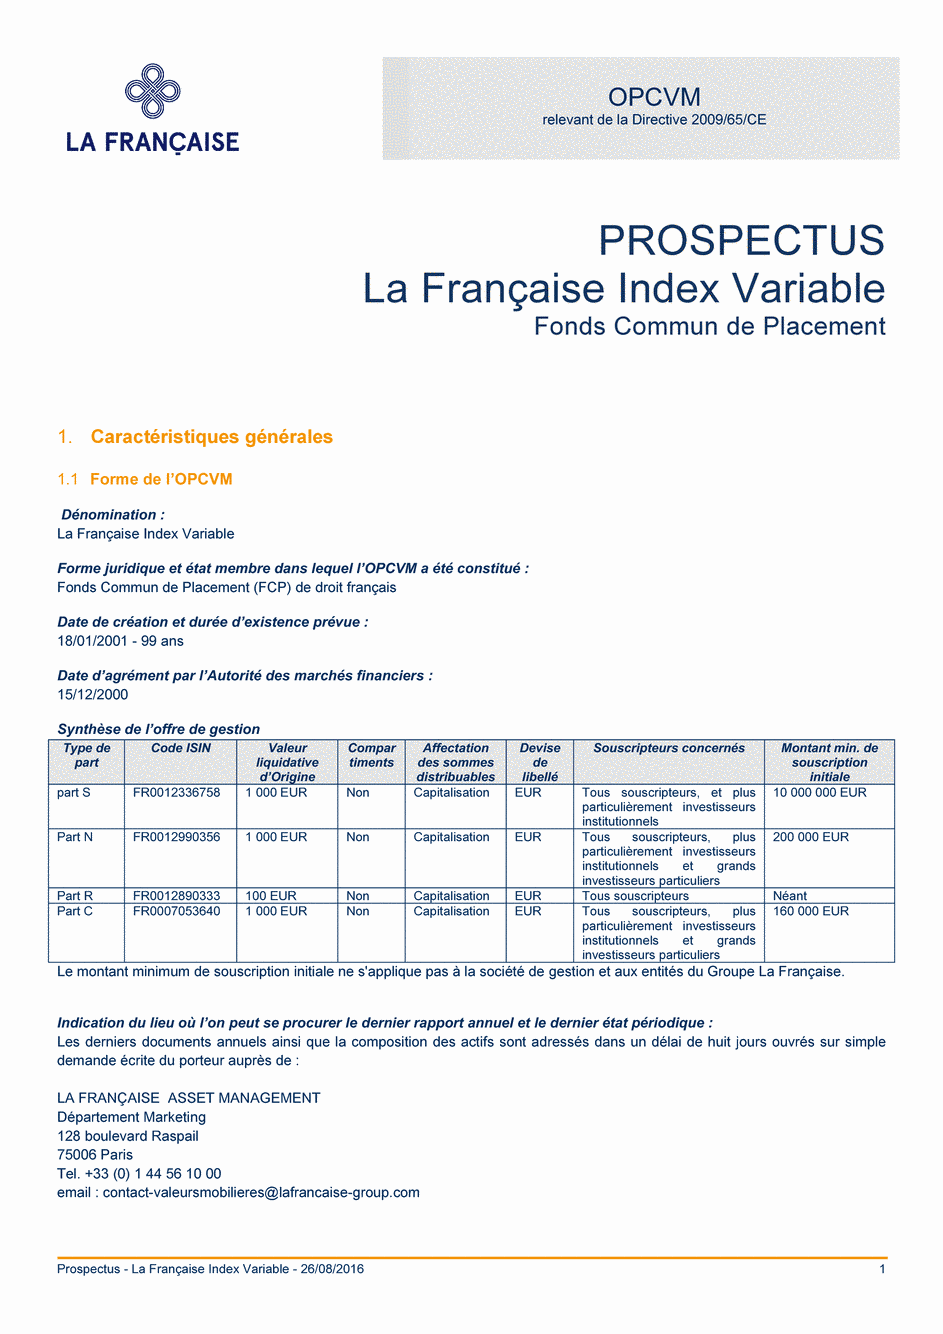 Prospectus La Française Moderate Multibonds - Part C - 26/08/2016 - Français